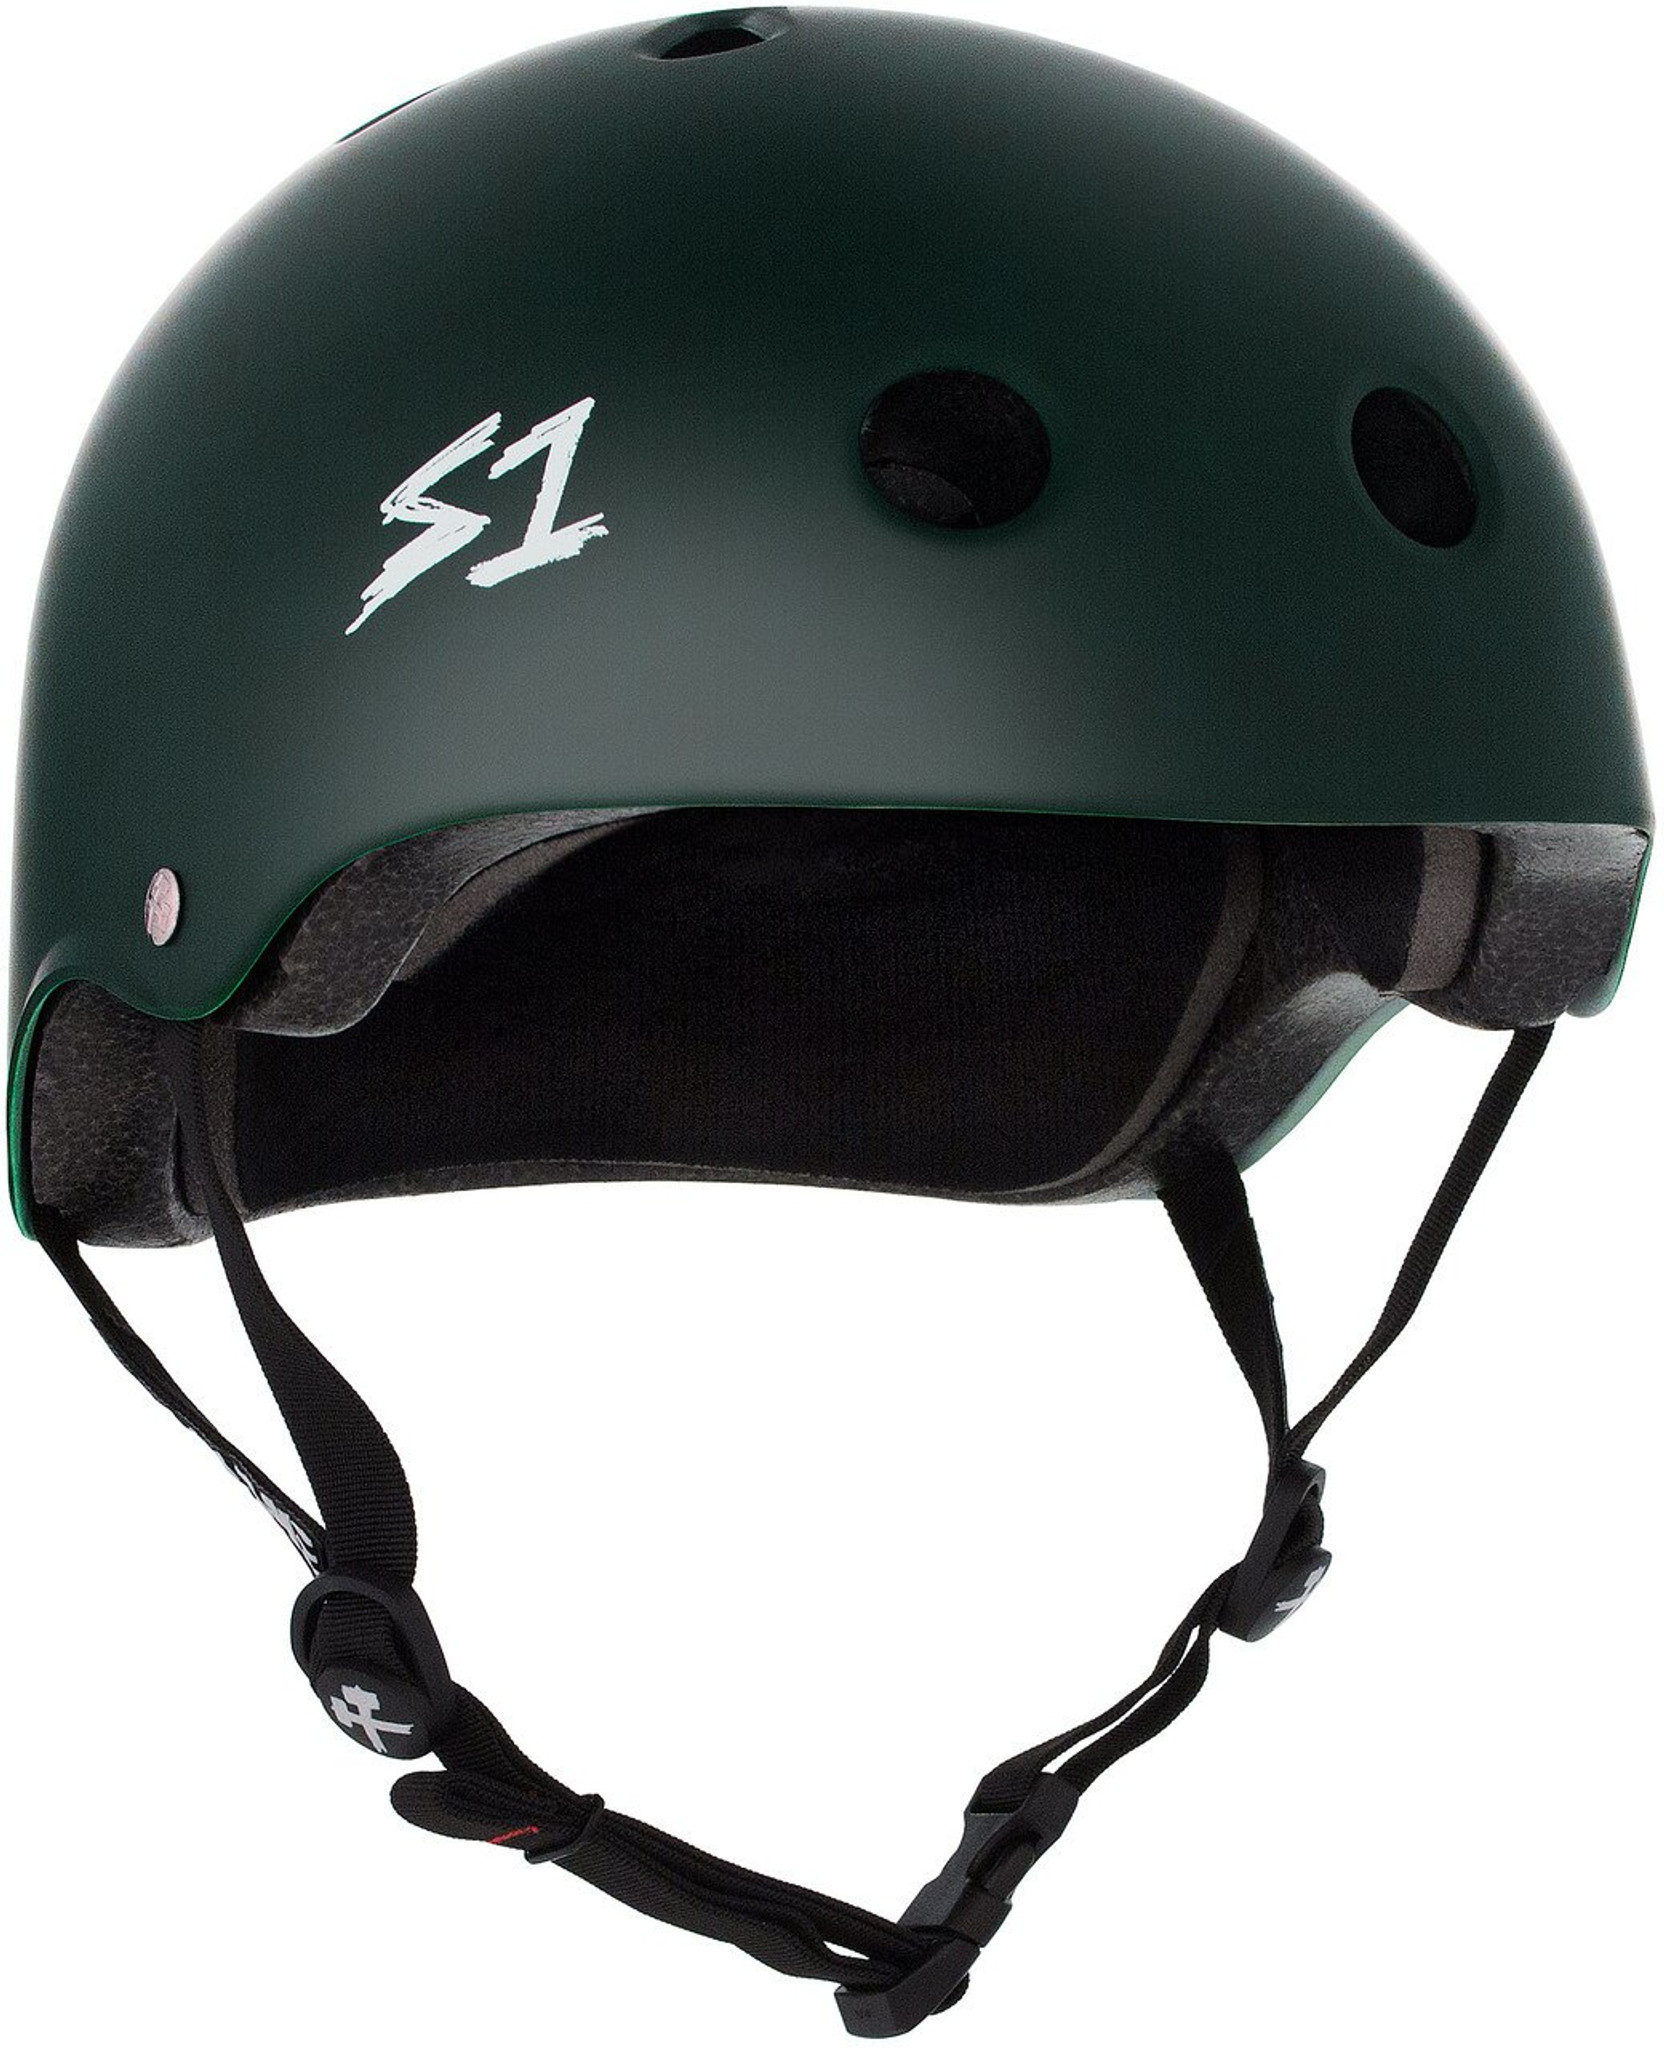 S1 Lifer Helmet - Matt Dark Green